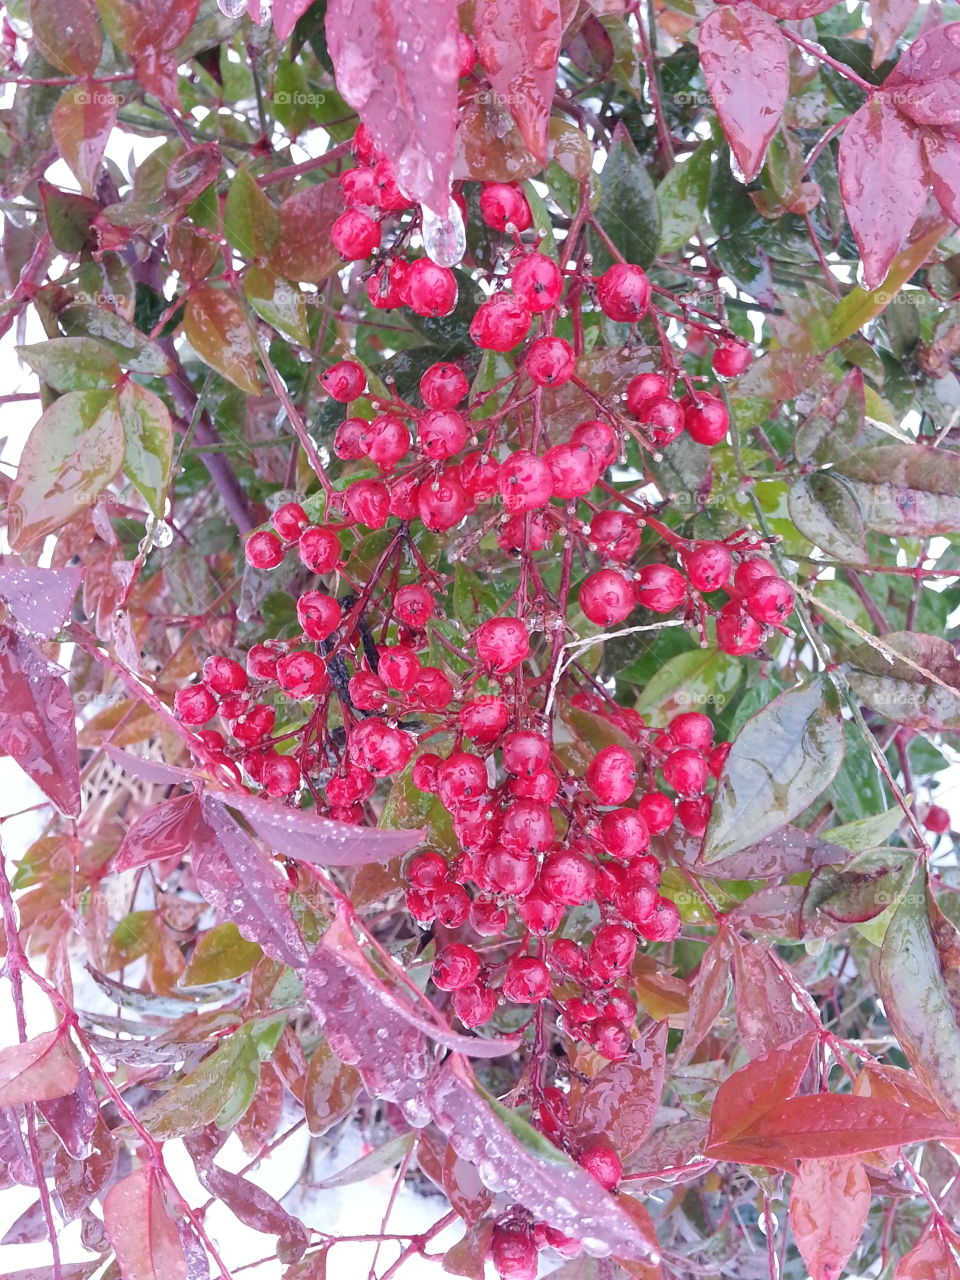 Red berries on bush. Red berries on bush